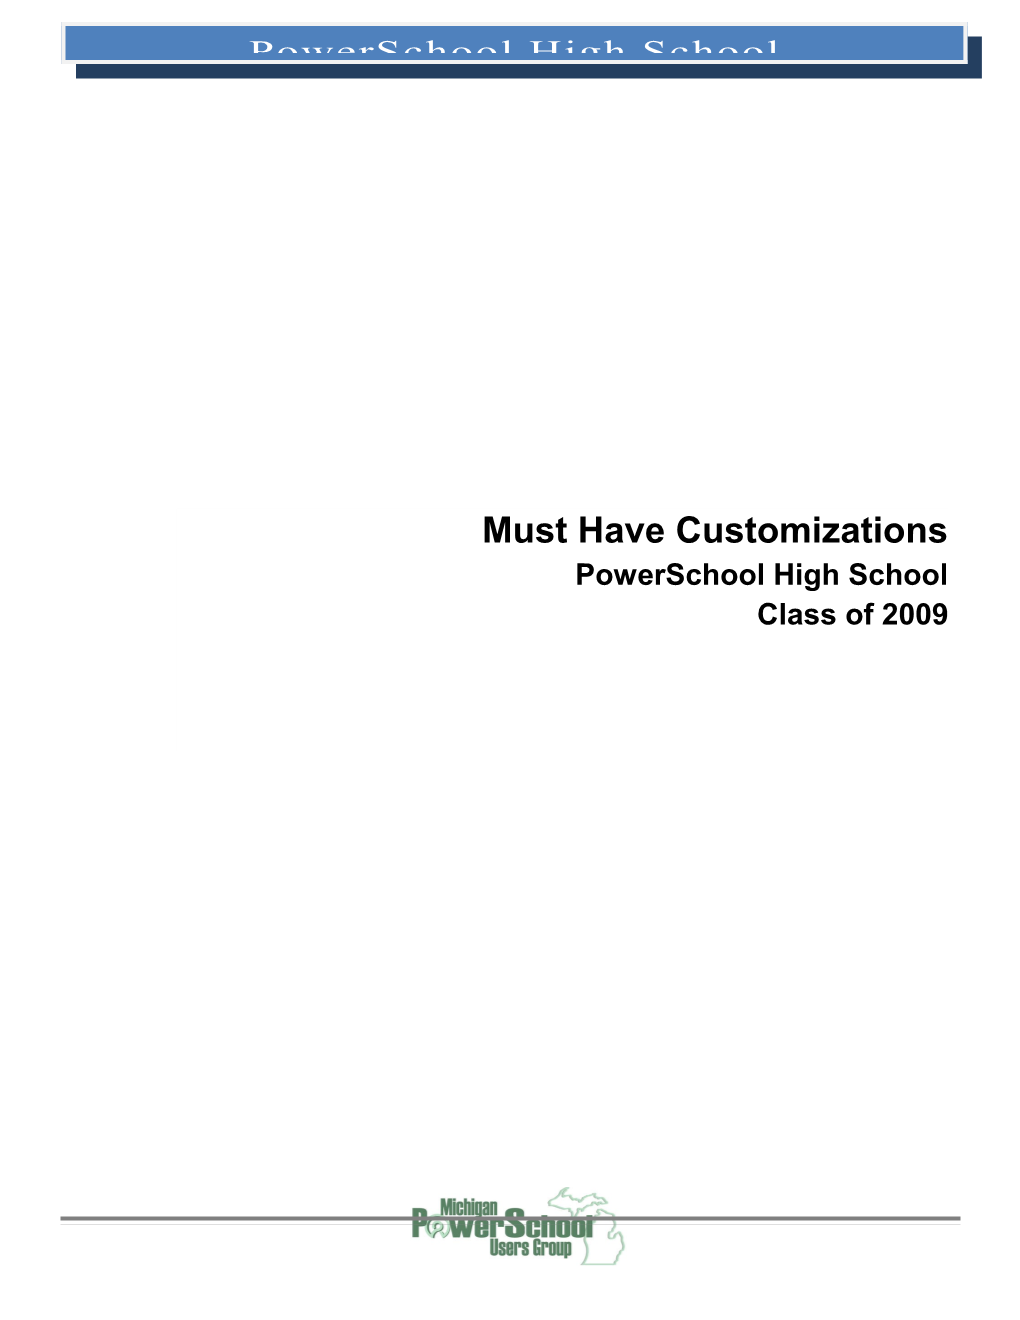 Customization Basics